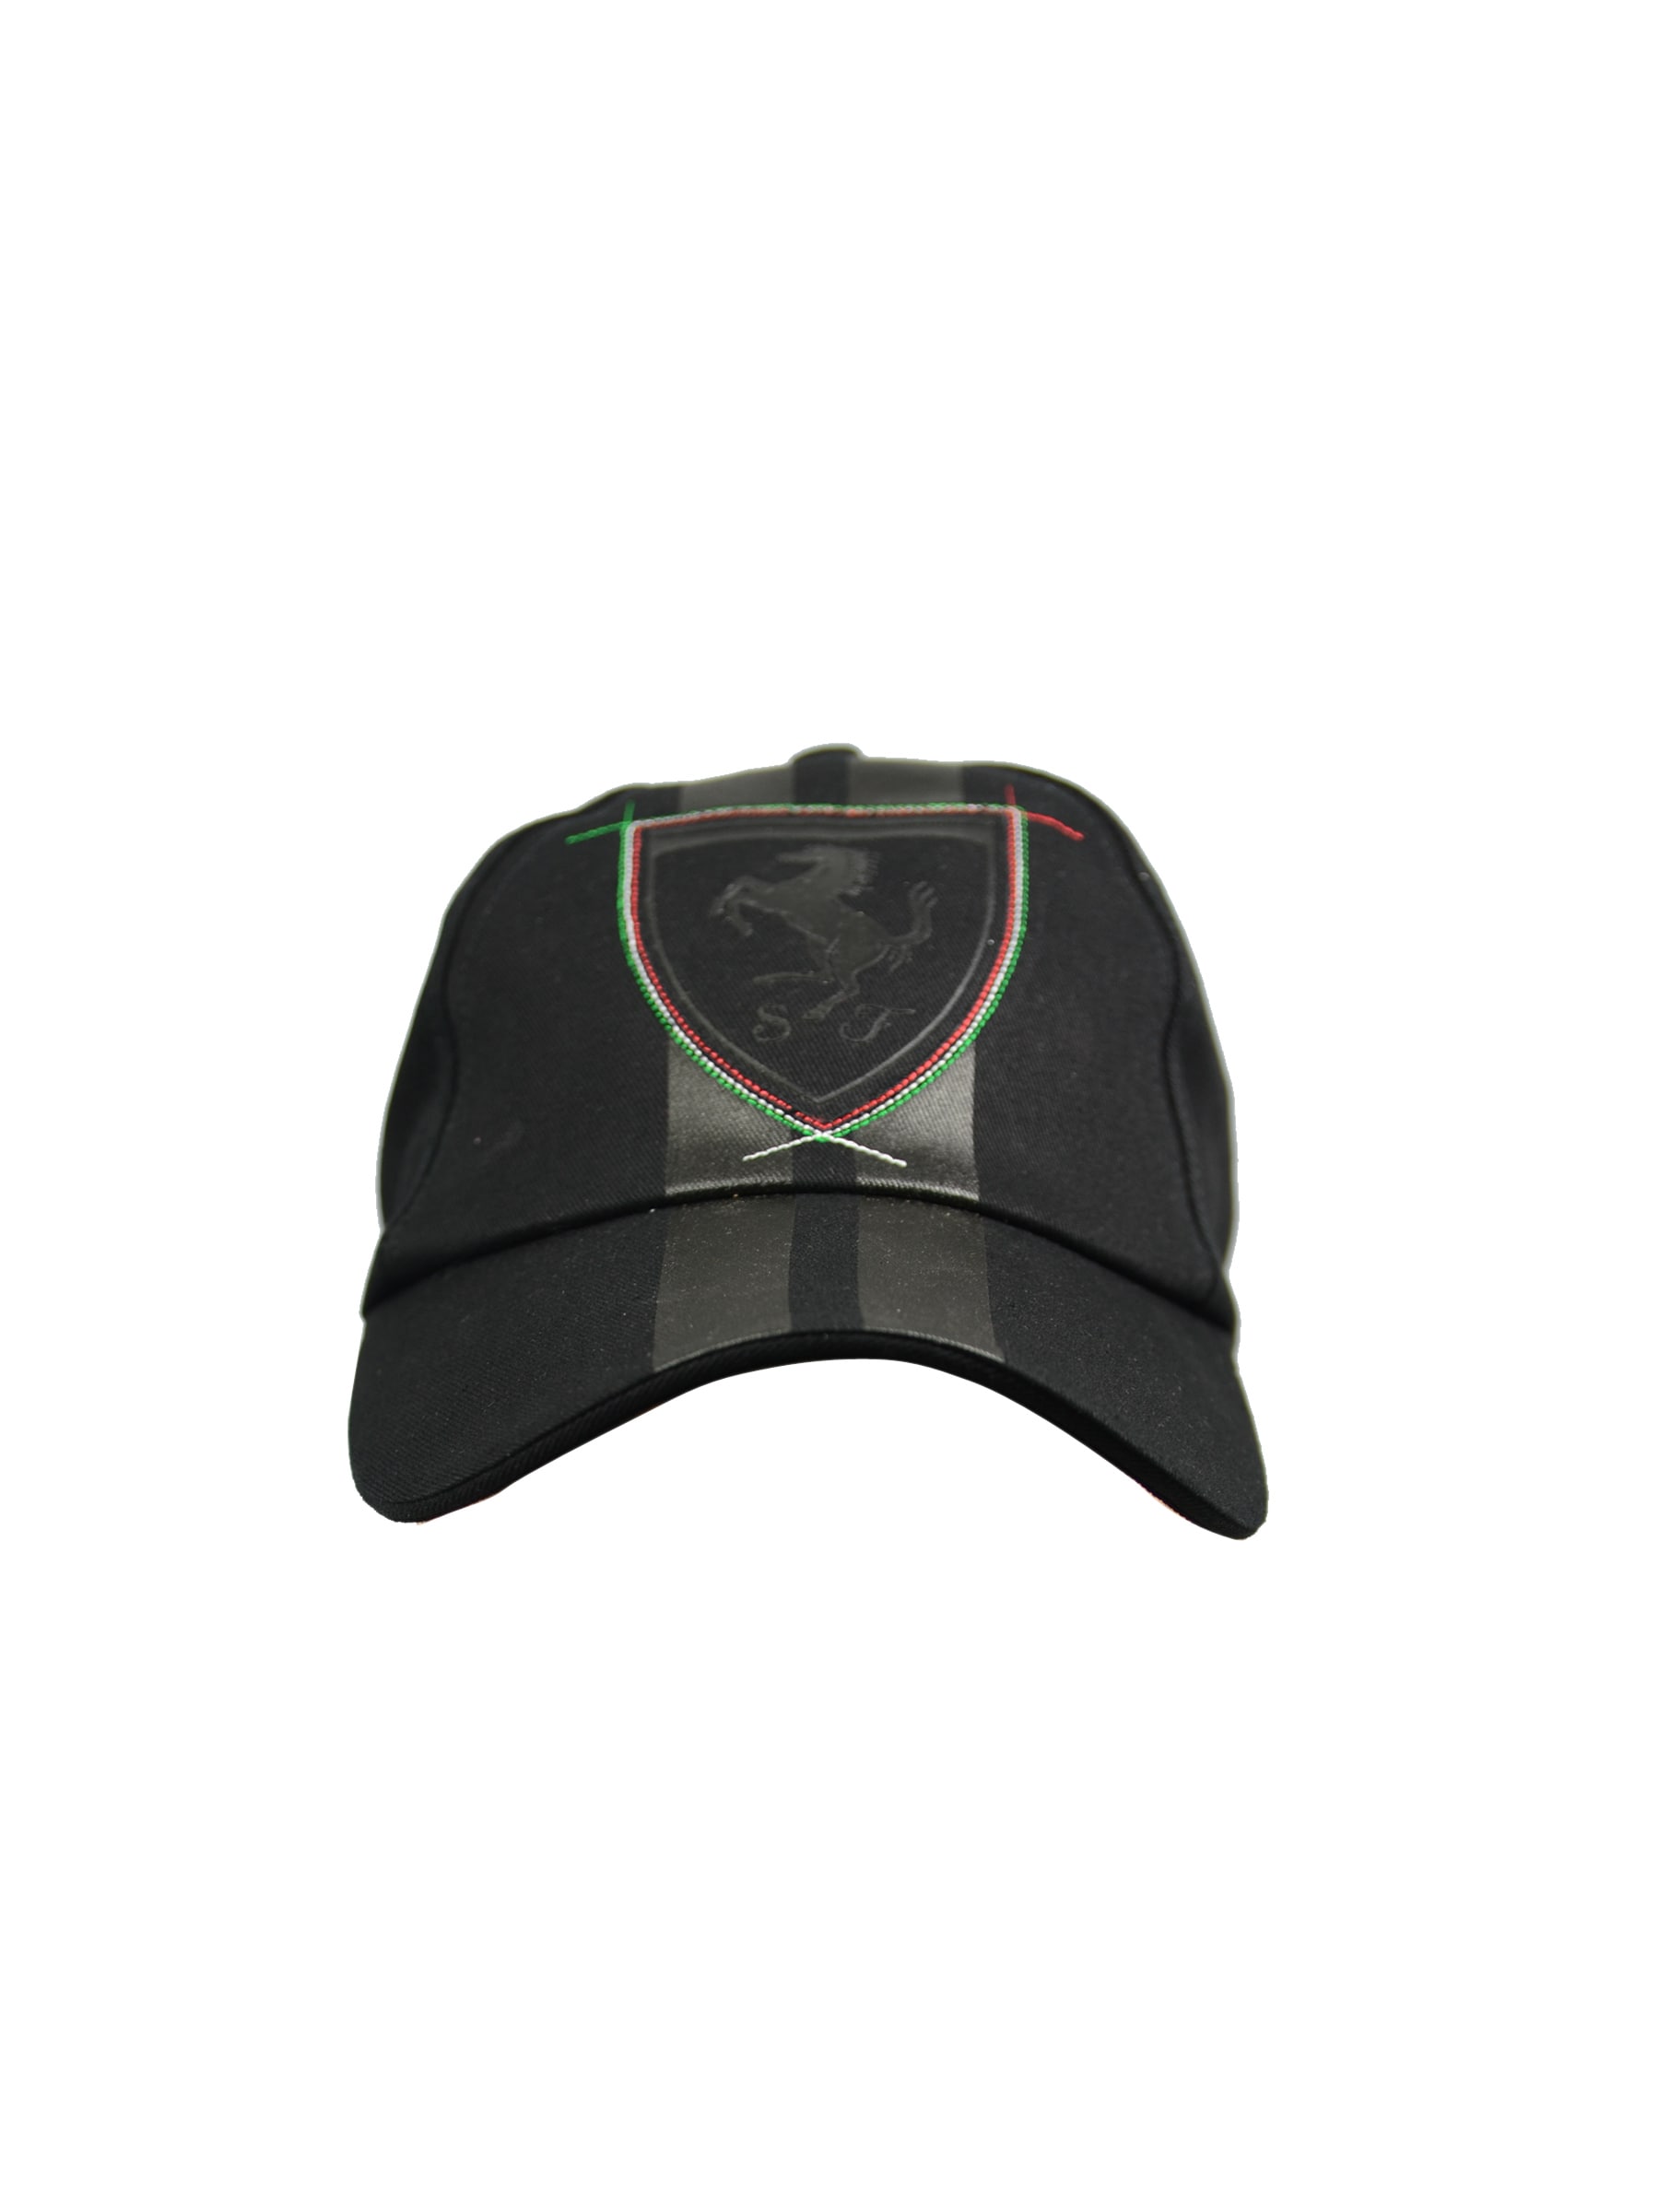 Puma Unisex Ferrari Lifestyle Black Cap